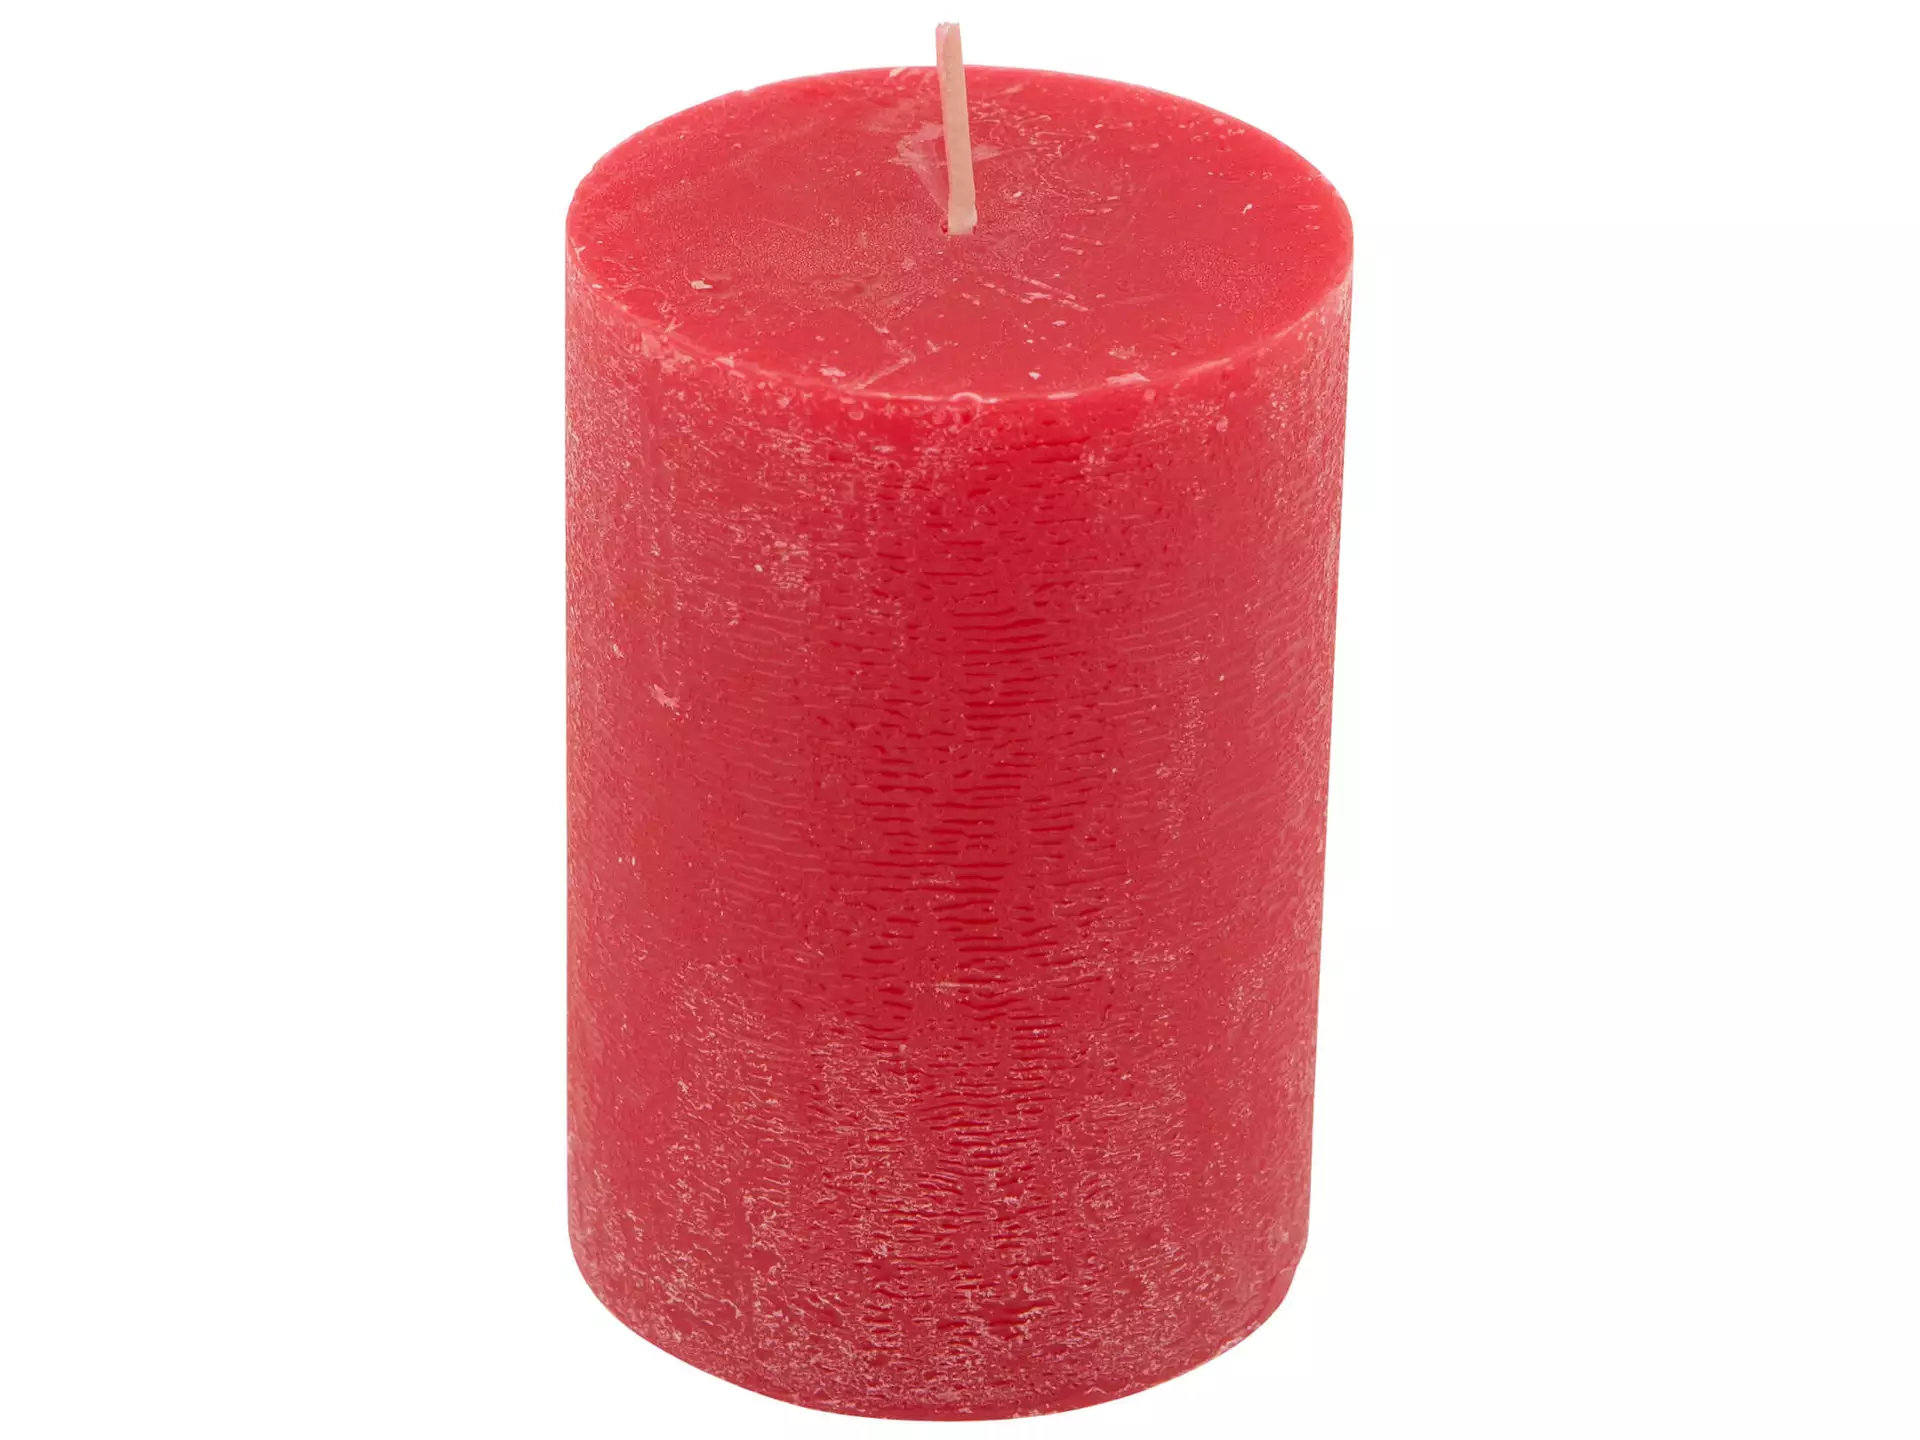 Kerze, Zylinderform, Rot, Durchmesser 7 cm h 10 cm